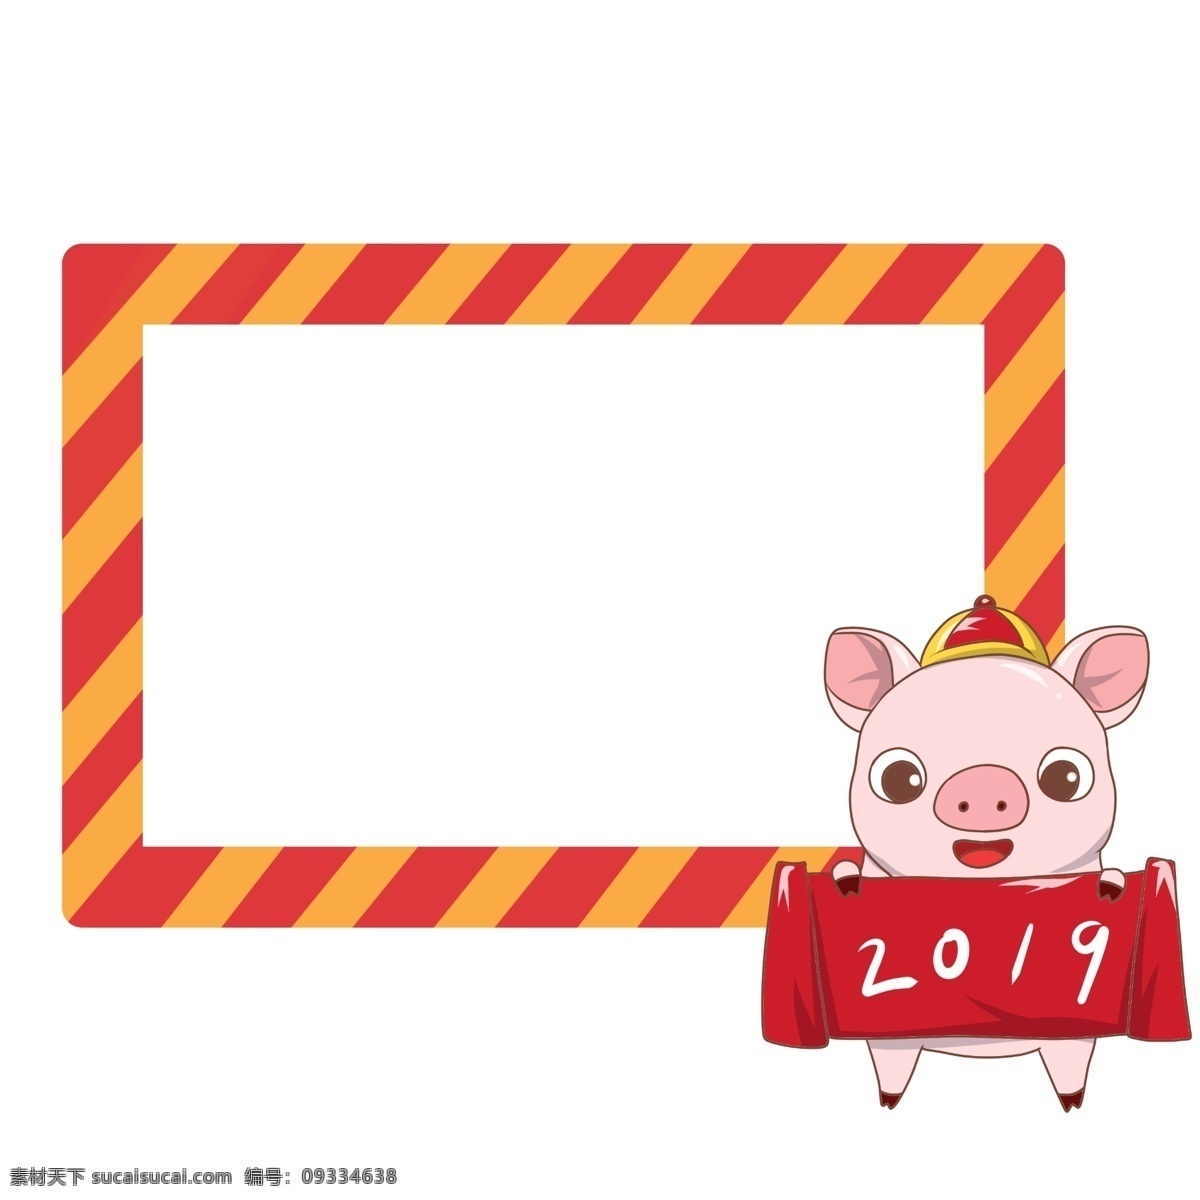 新年 小 猪 边框 插画 新年小猪边框 卡通小猪边框 黄色 漂亮 手绘小猪边框 可爱